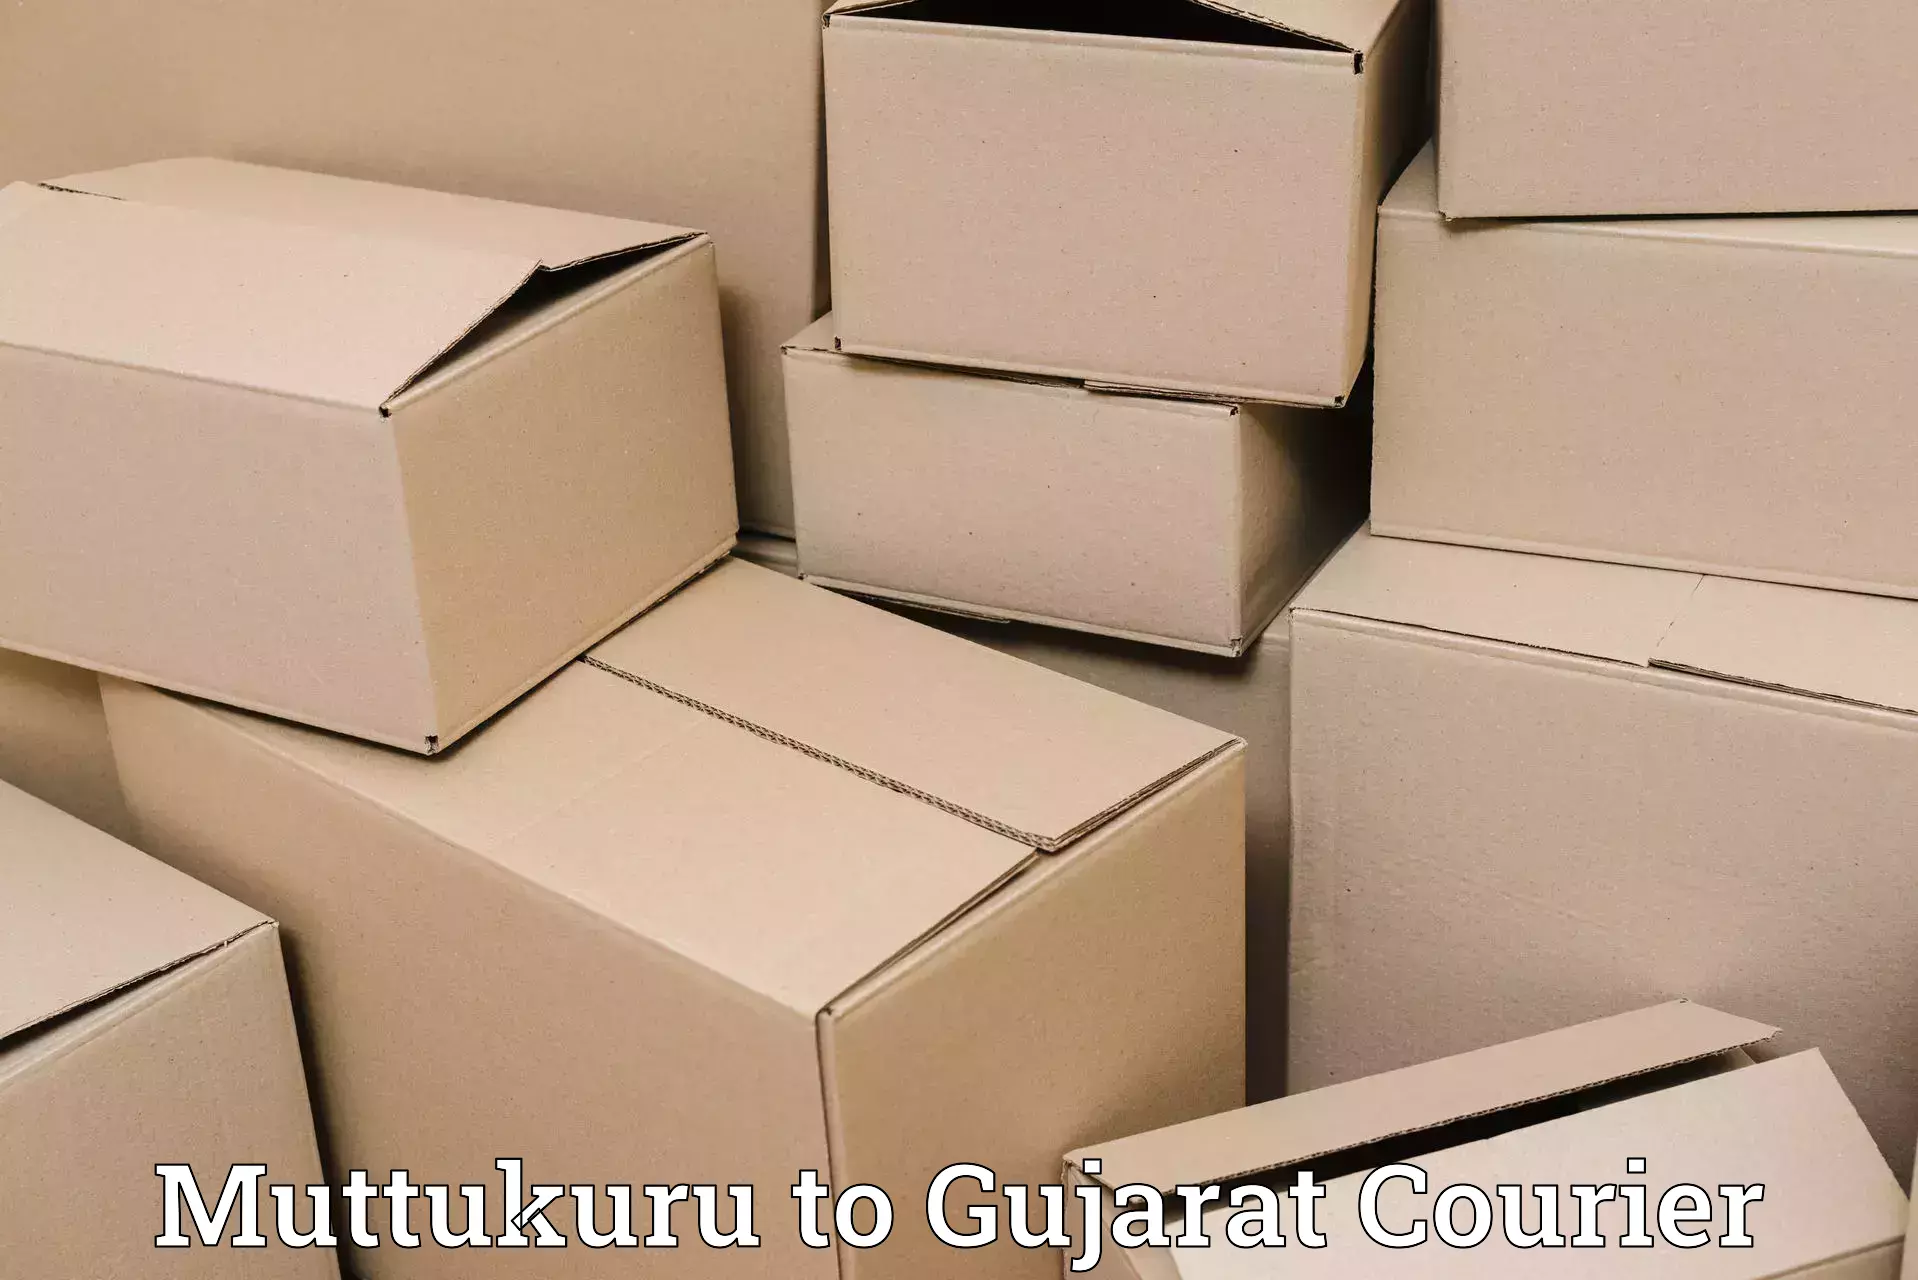 24/7 courier service Muttukuru to Vagara